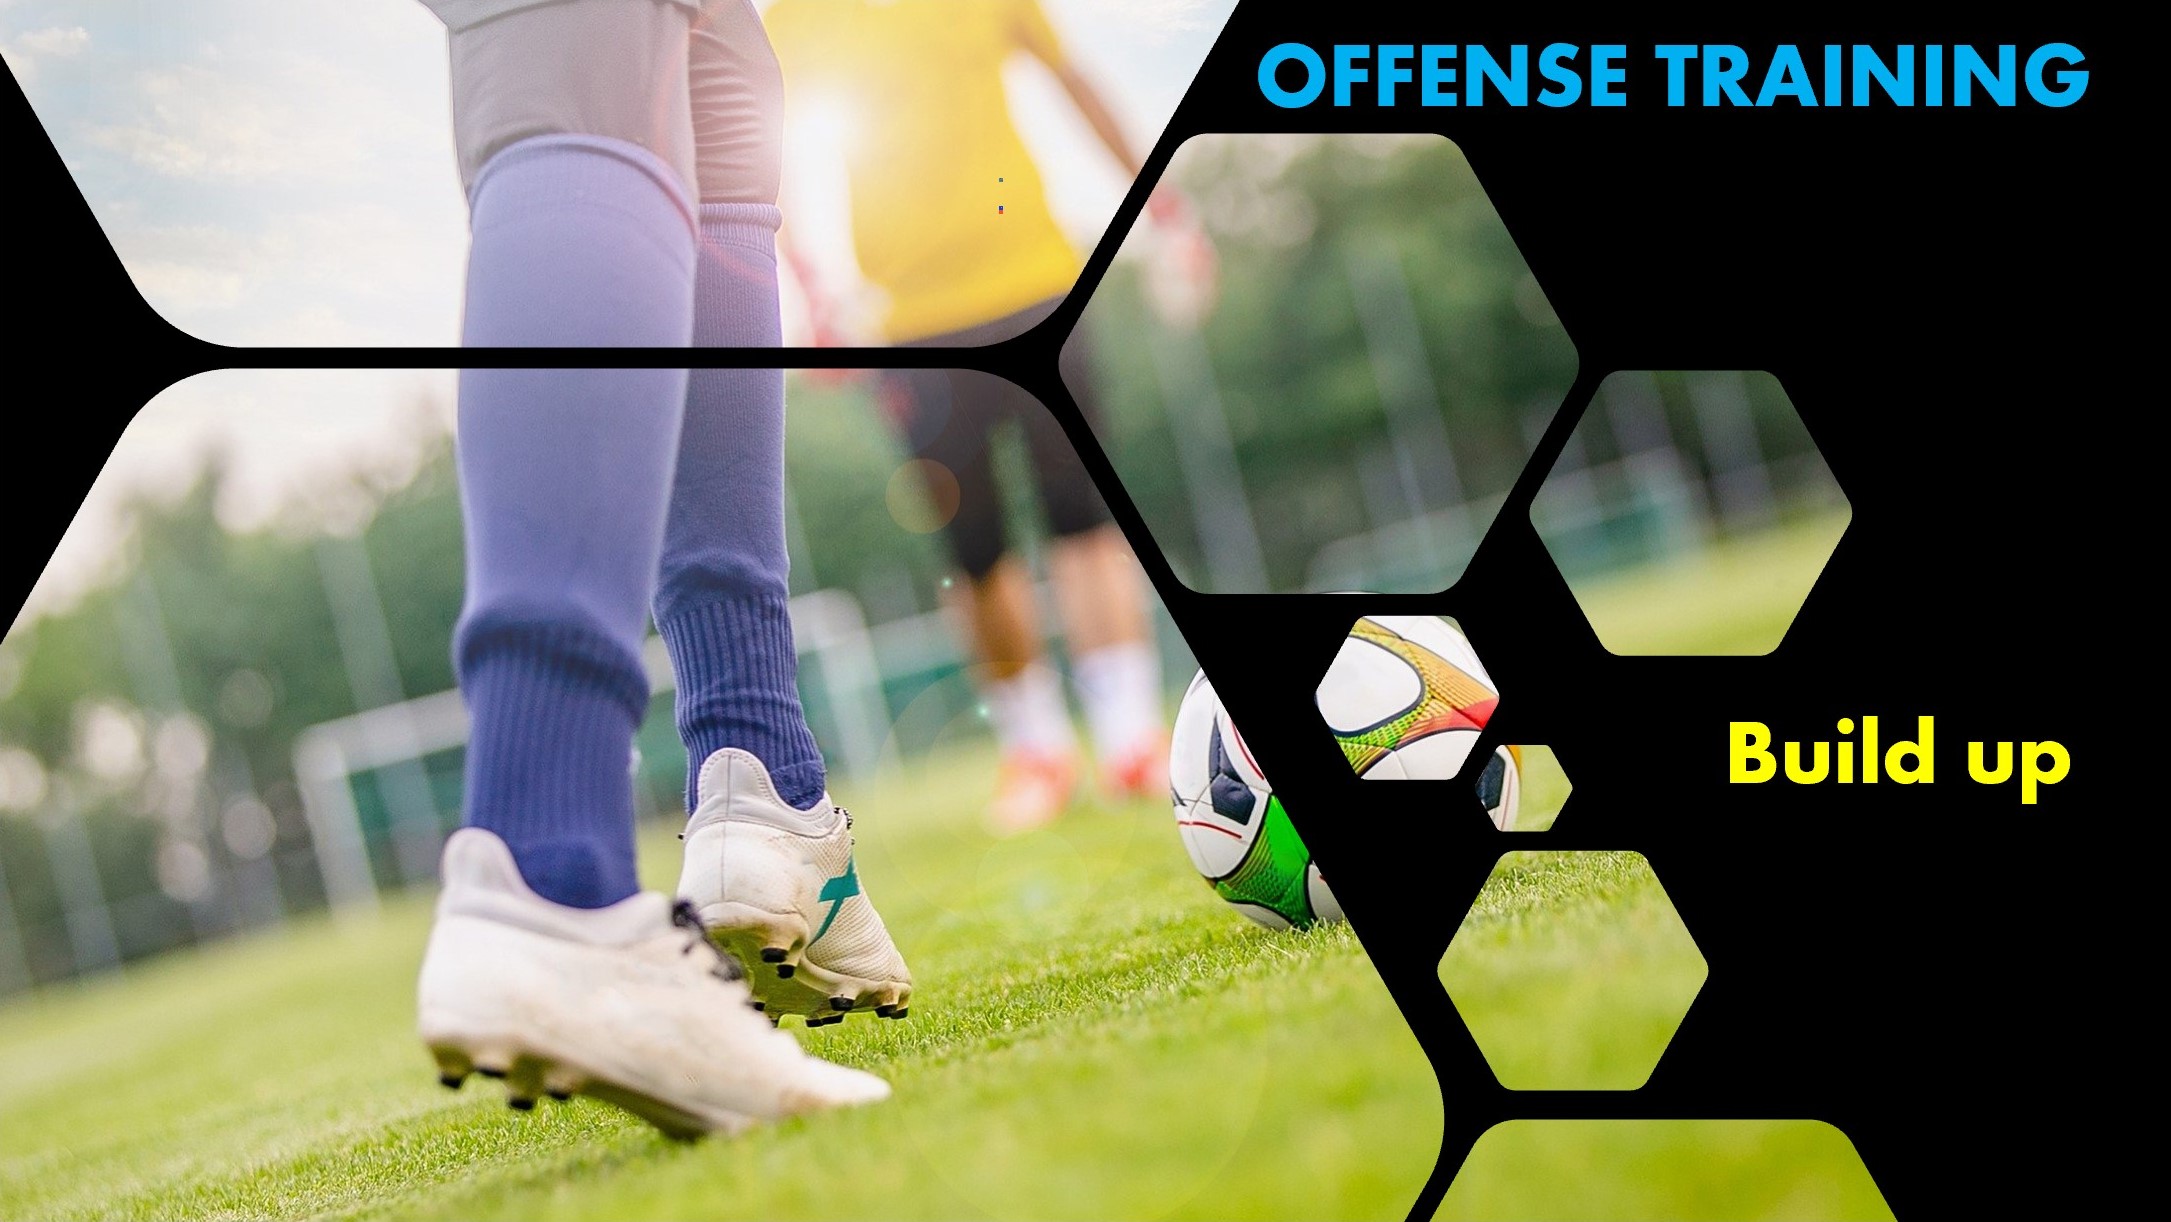 ビルドアップ 引きつけて離す 攻撃の組み立ての基本を学ぶトレーニング Football Way